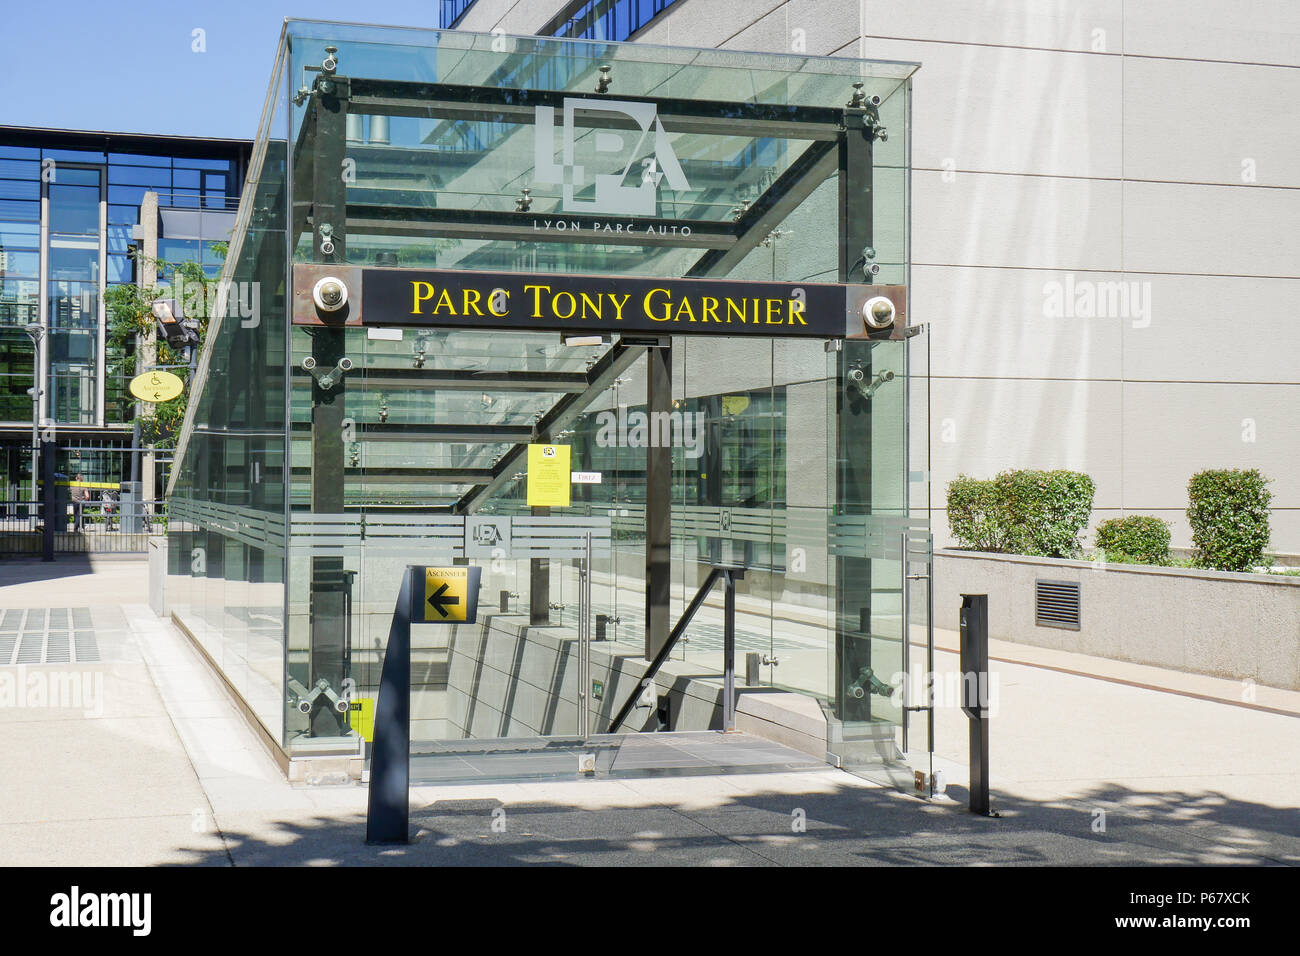 Parking gratuit Tony Garnier, district de Gerlad, Lyon, France Photo Stock  - Alamy